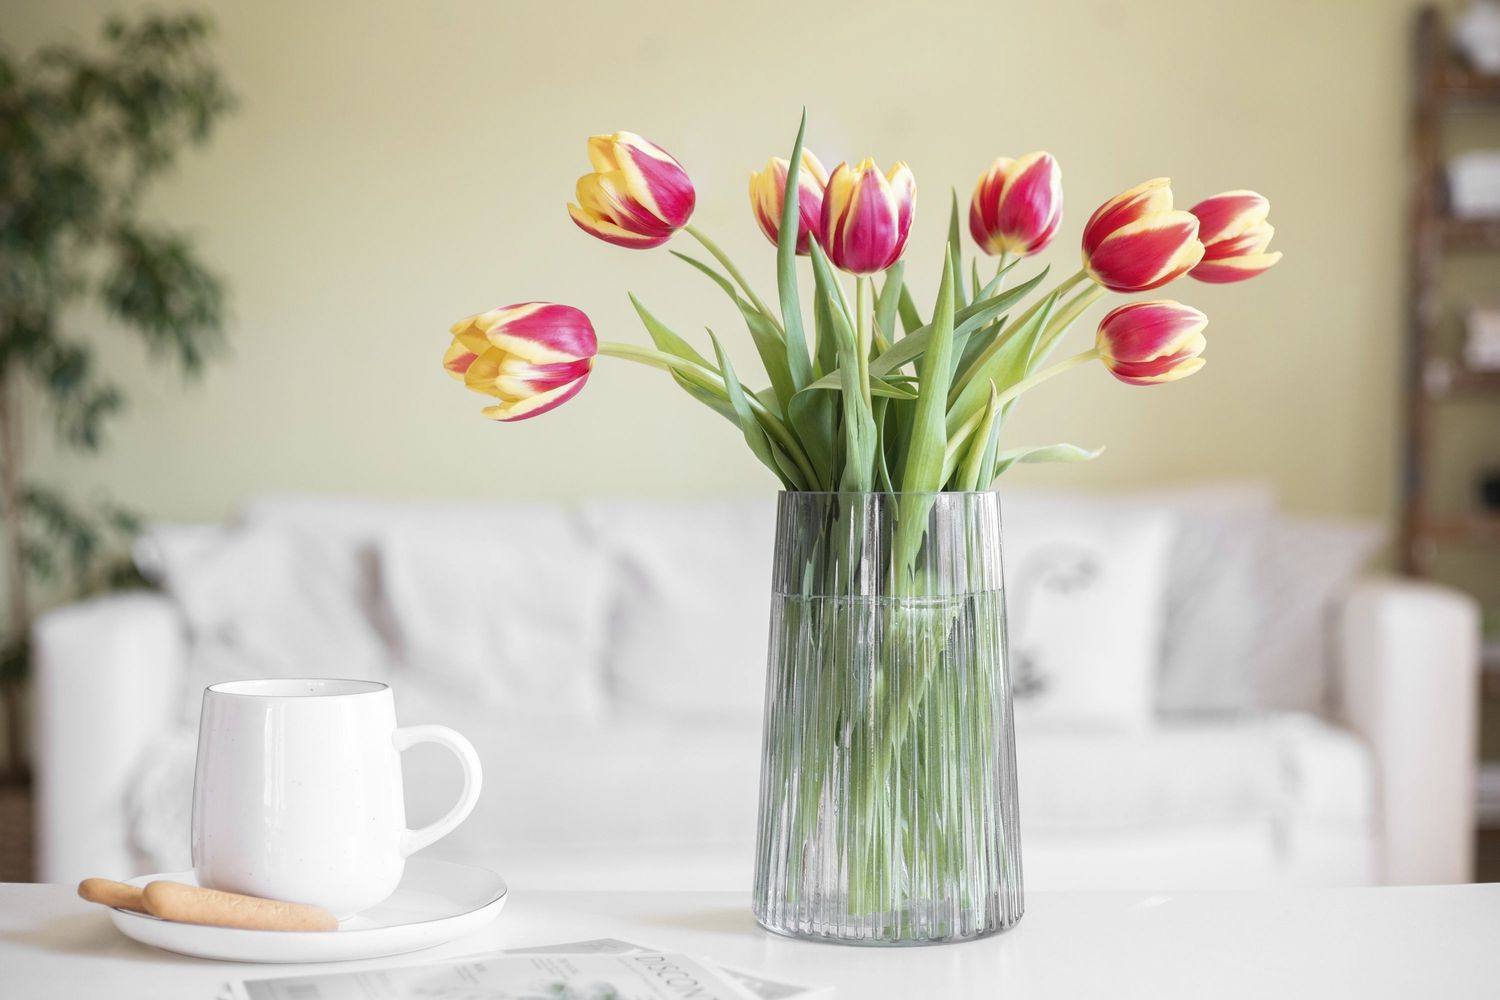 Tulipanes cortados amarillos y rosas colocados en un jarrón de cristal junto a una taza de café